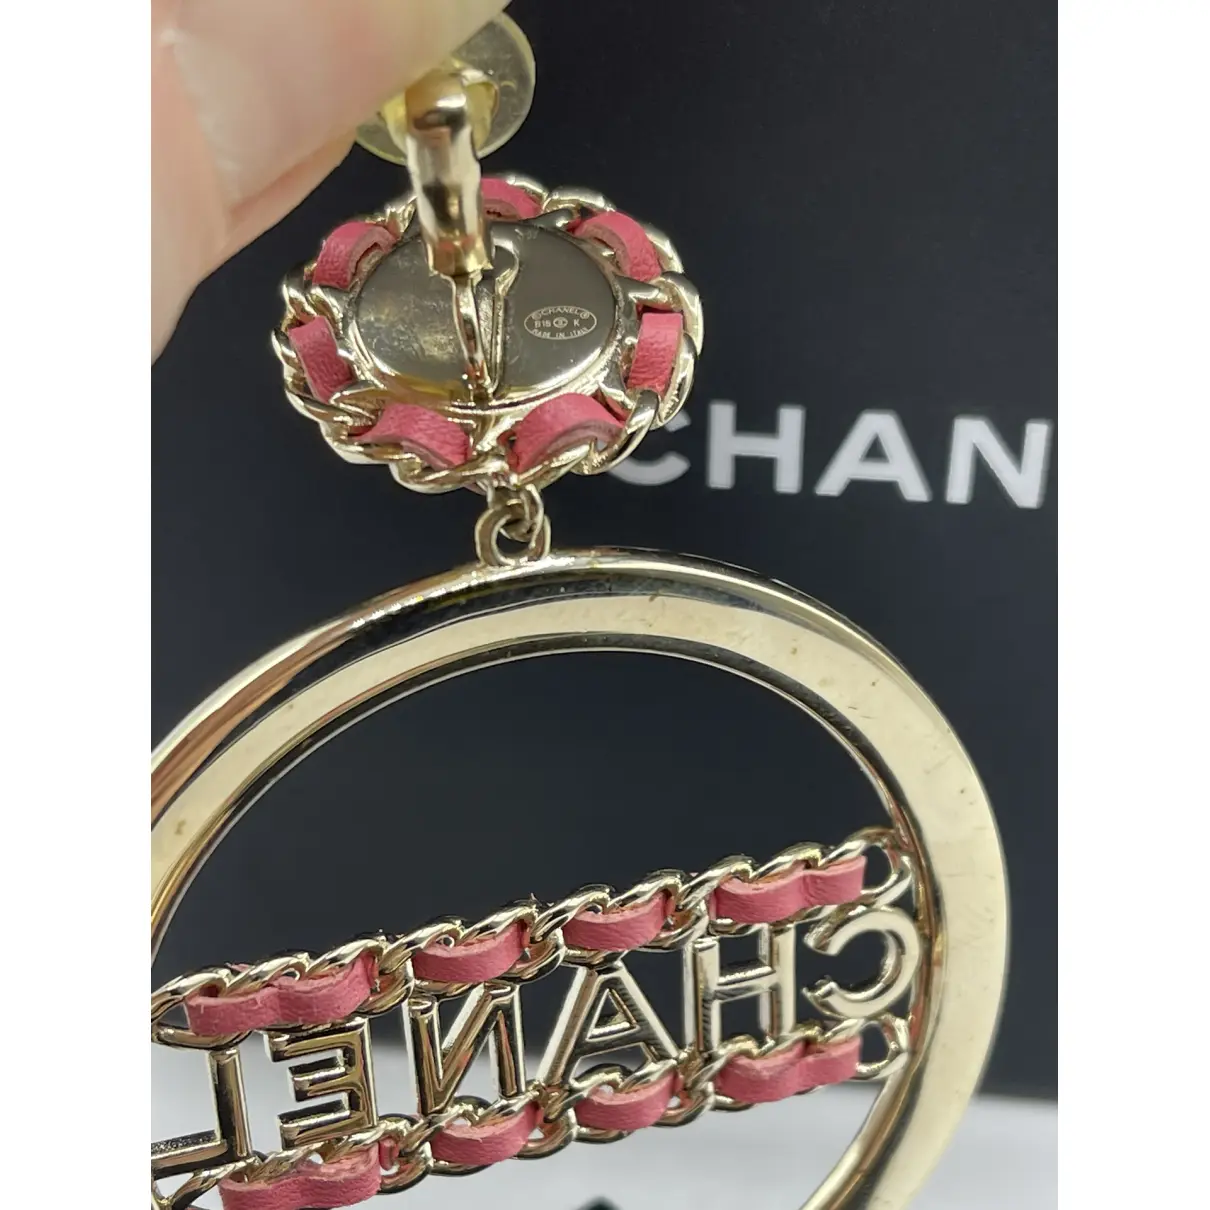 CHANEL earrings Chanel